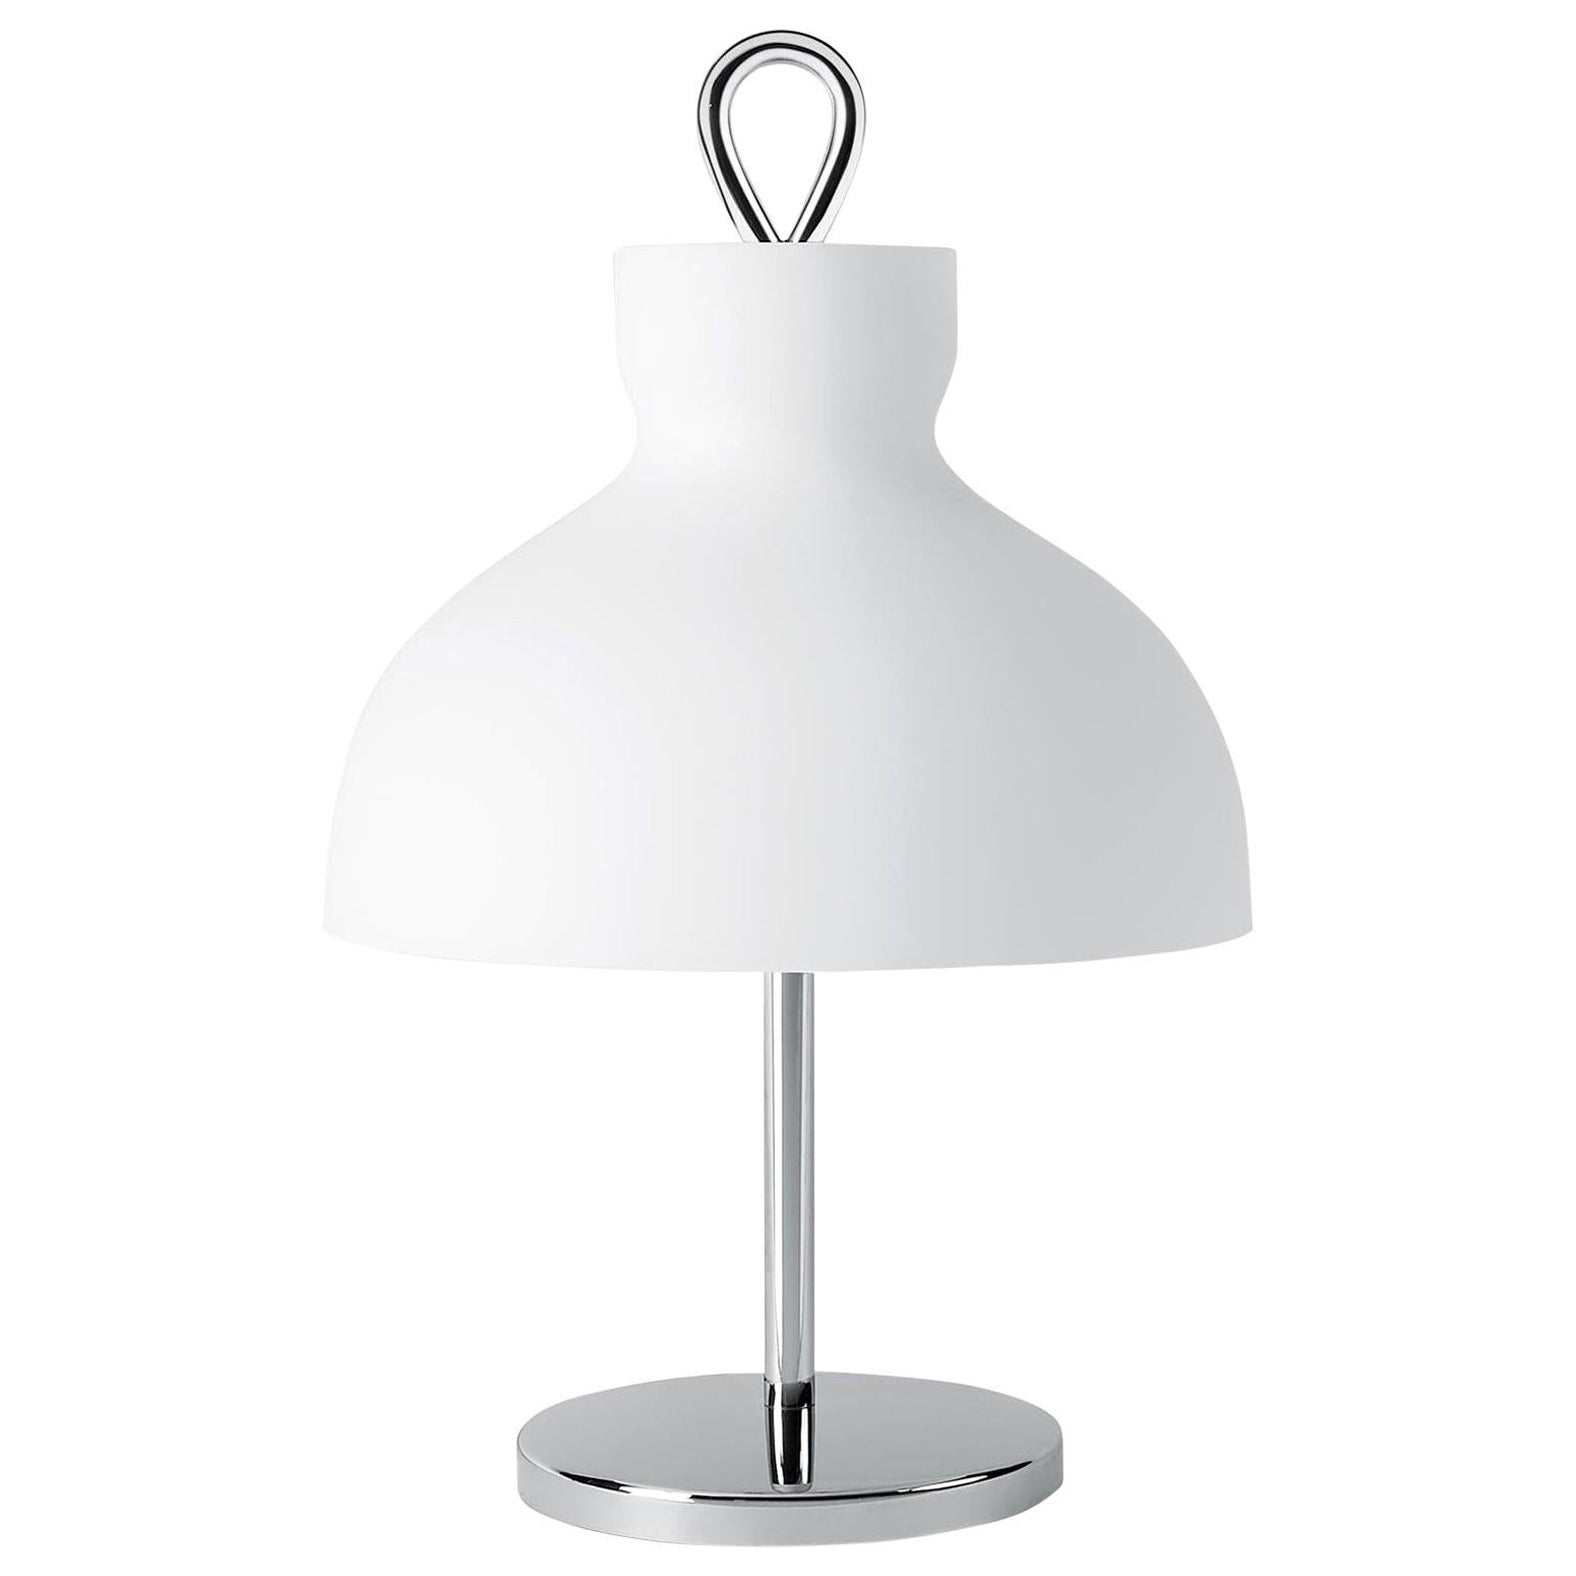 Ignazio Gardella 'Arenzano Bassa' Table Lamp in Chrome and Glass for Tato Italia In New Condition For Sale In Glendale, CA